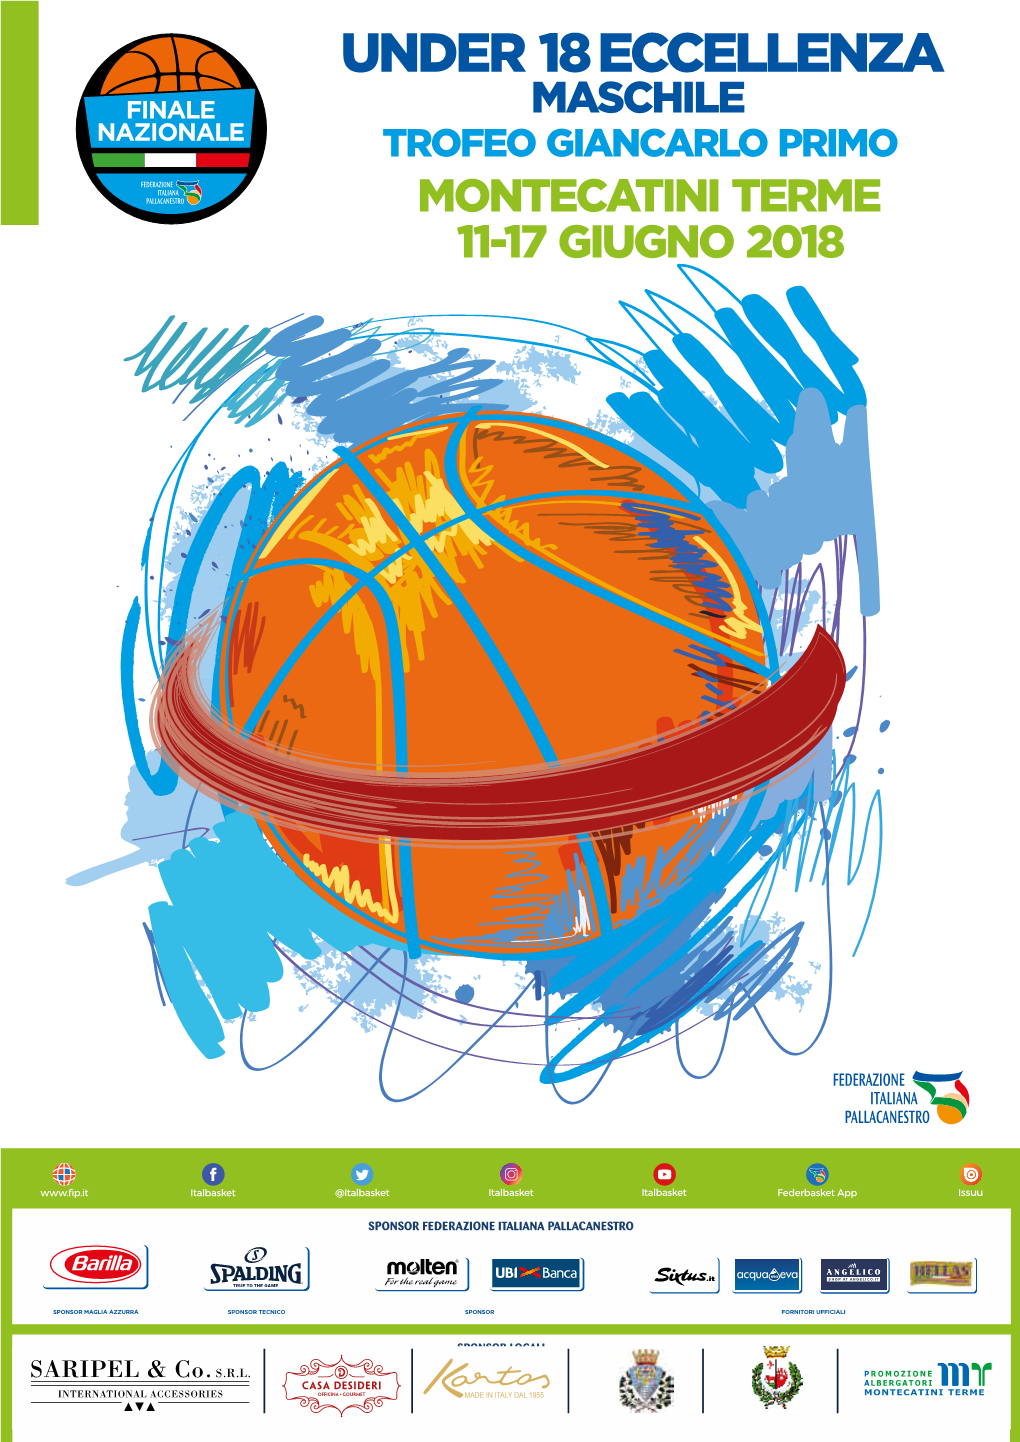 Under 18 Eccellenza Maschile Trofeo Giancarlo Primo Montecatini Terme 11-17 Giugno 2018